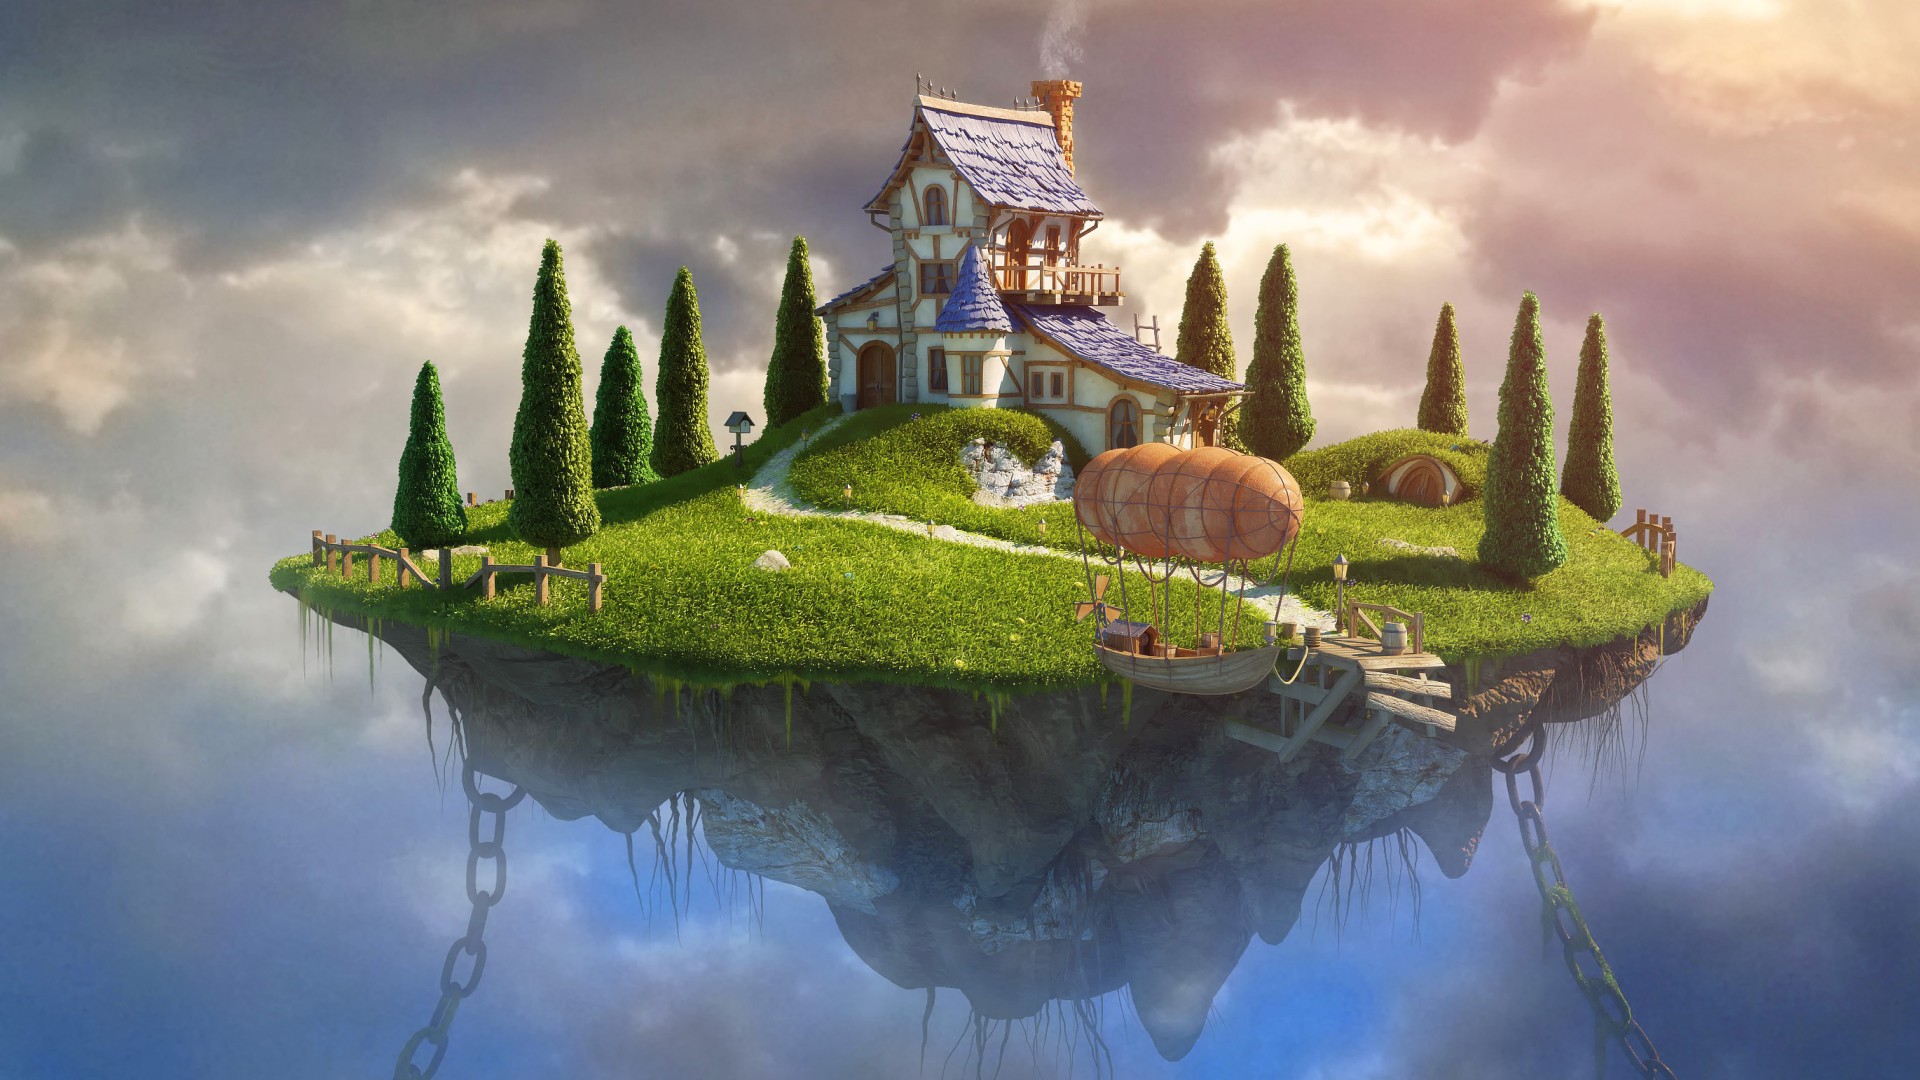 房子,链条,树,草,飞船,幻想主题风景桌面壁纸